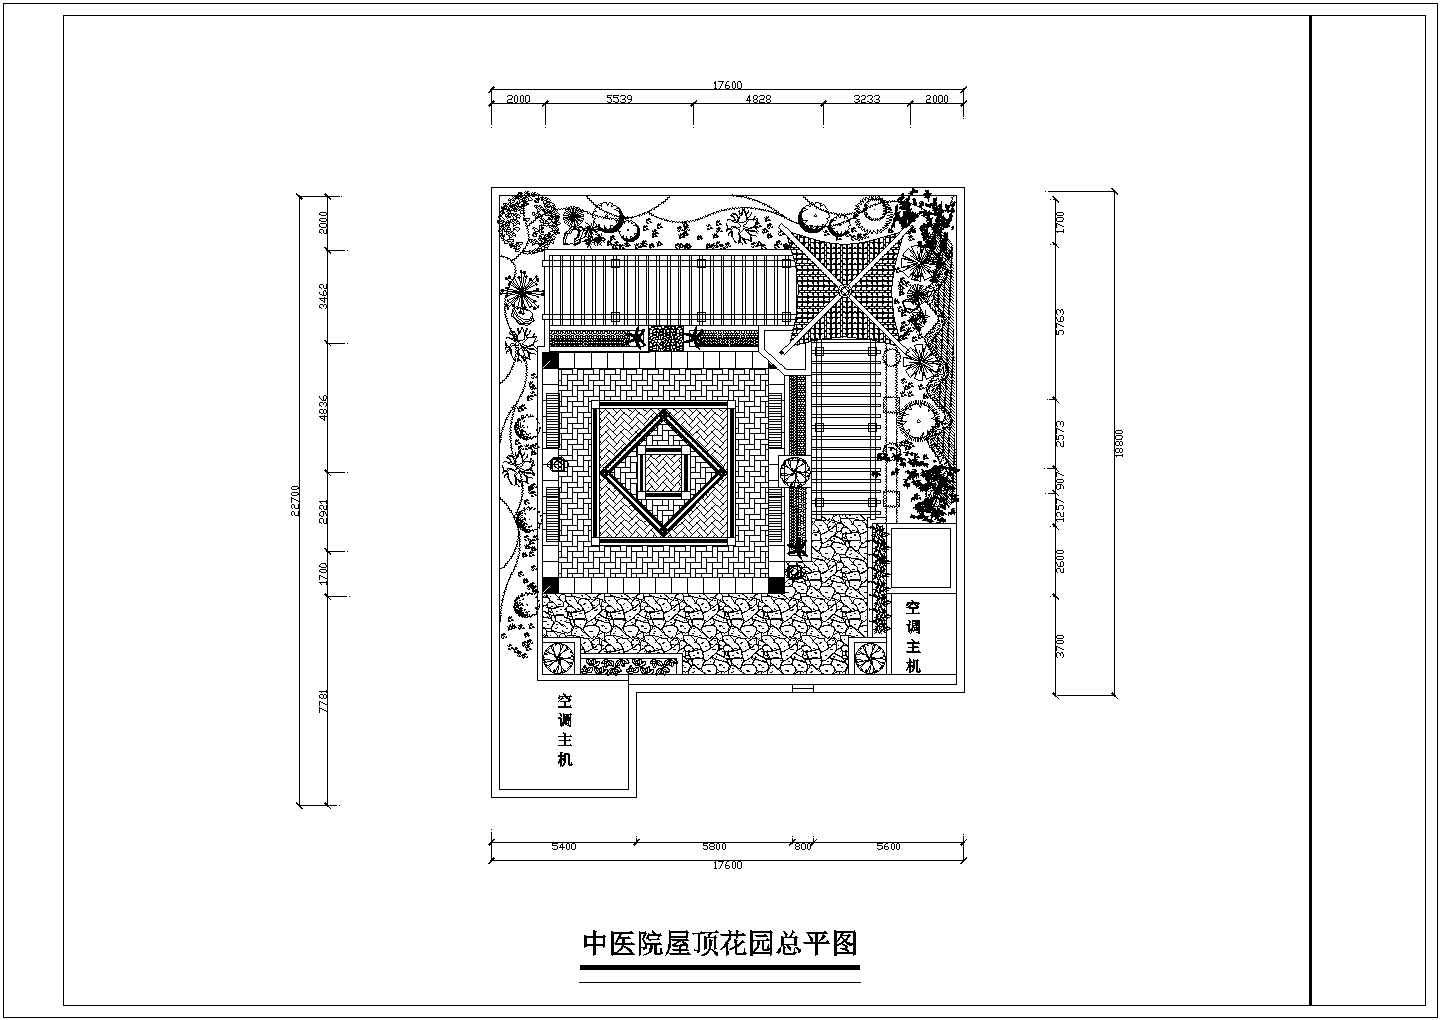 鞍山中医院屋顶花园设计全套施工cad图